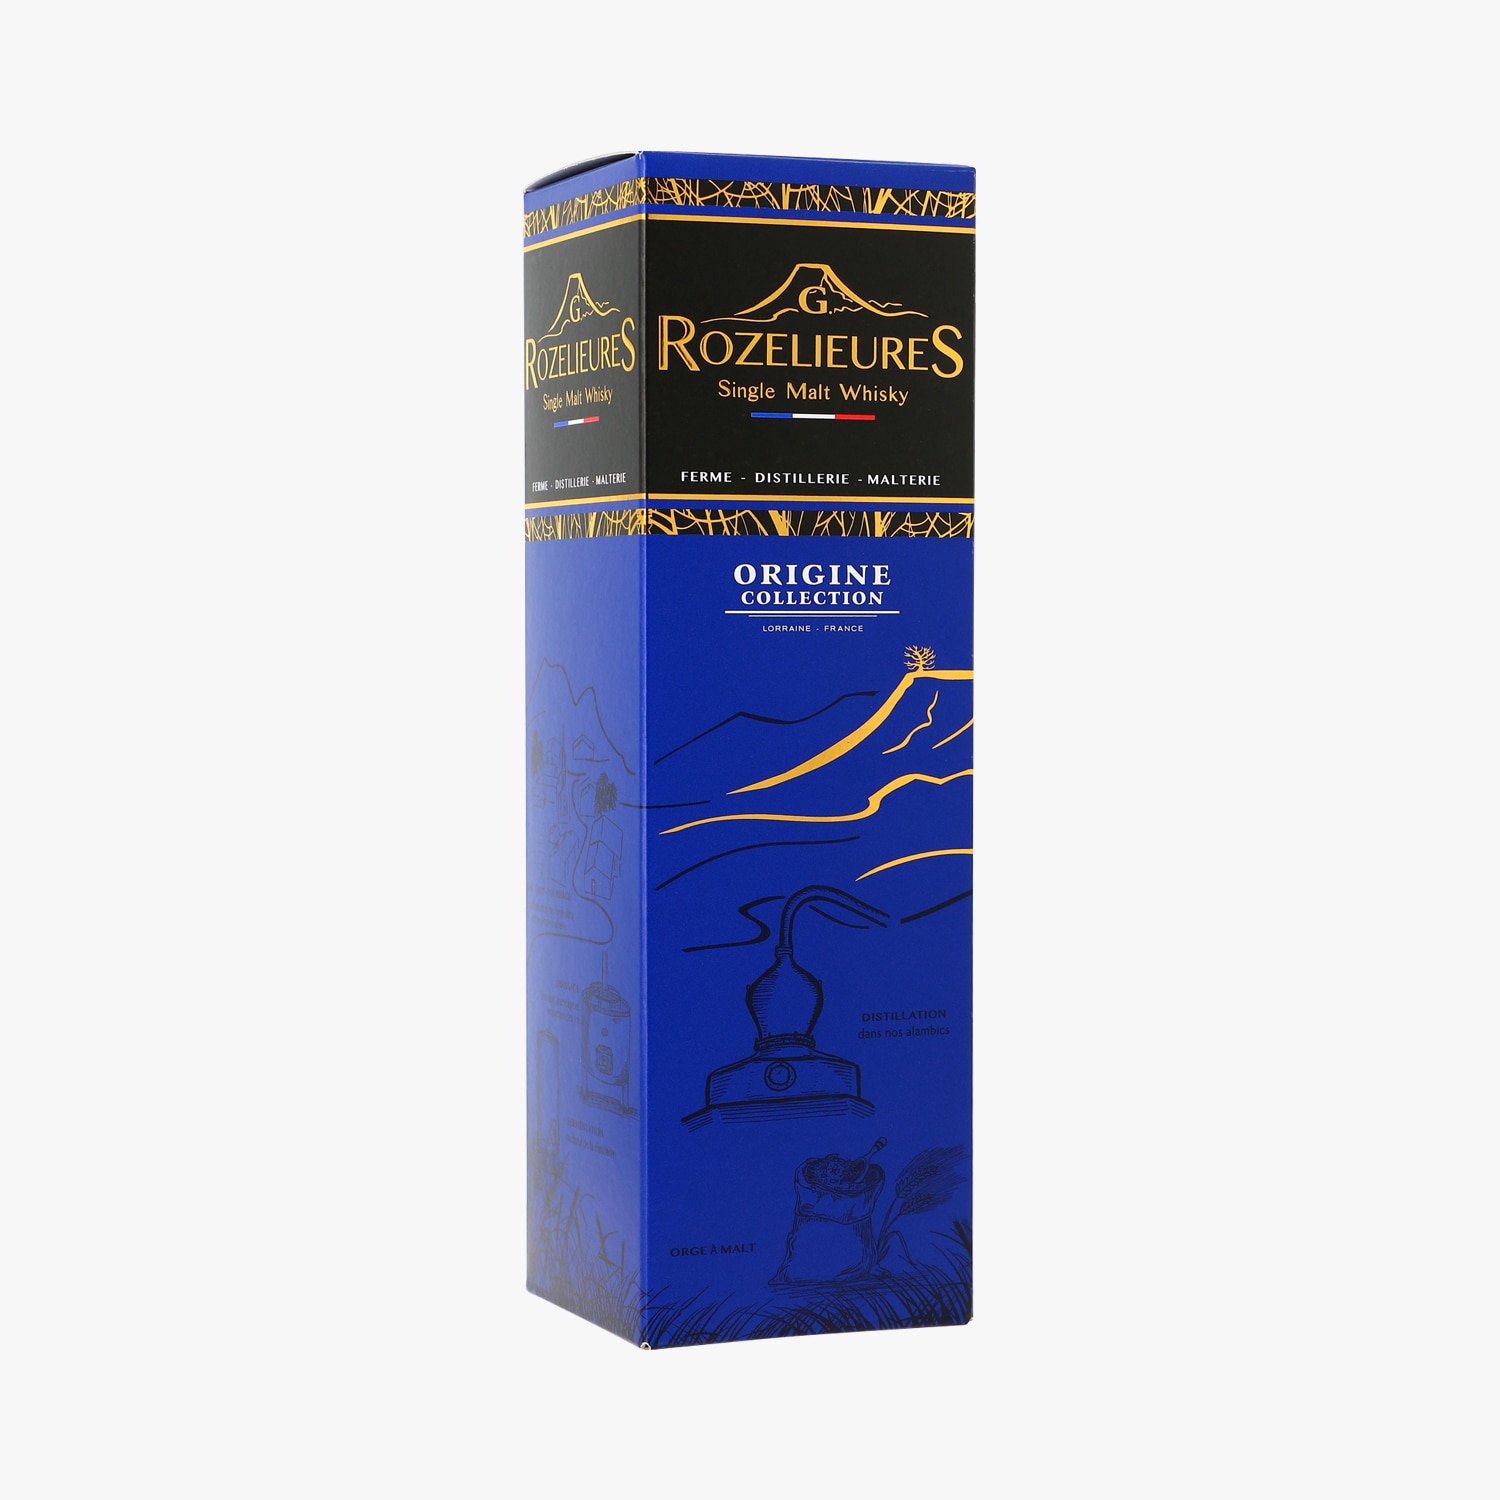 G. Rozelieures, Fumé Collection, Single malt whisky, sous étui - G